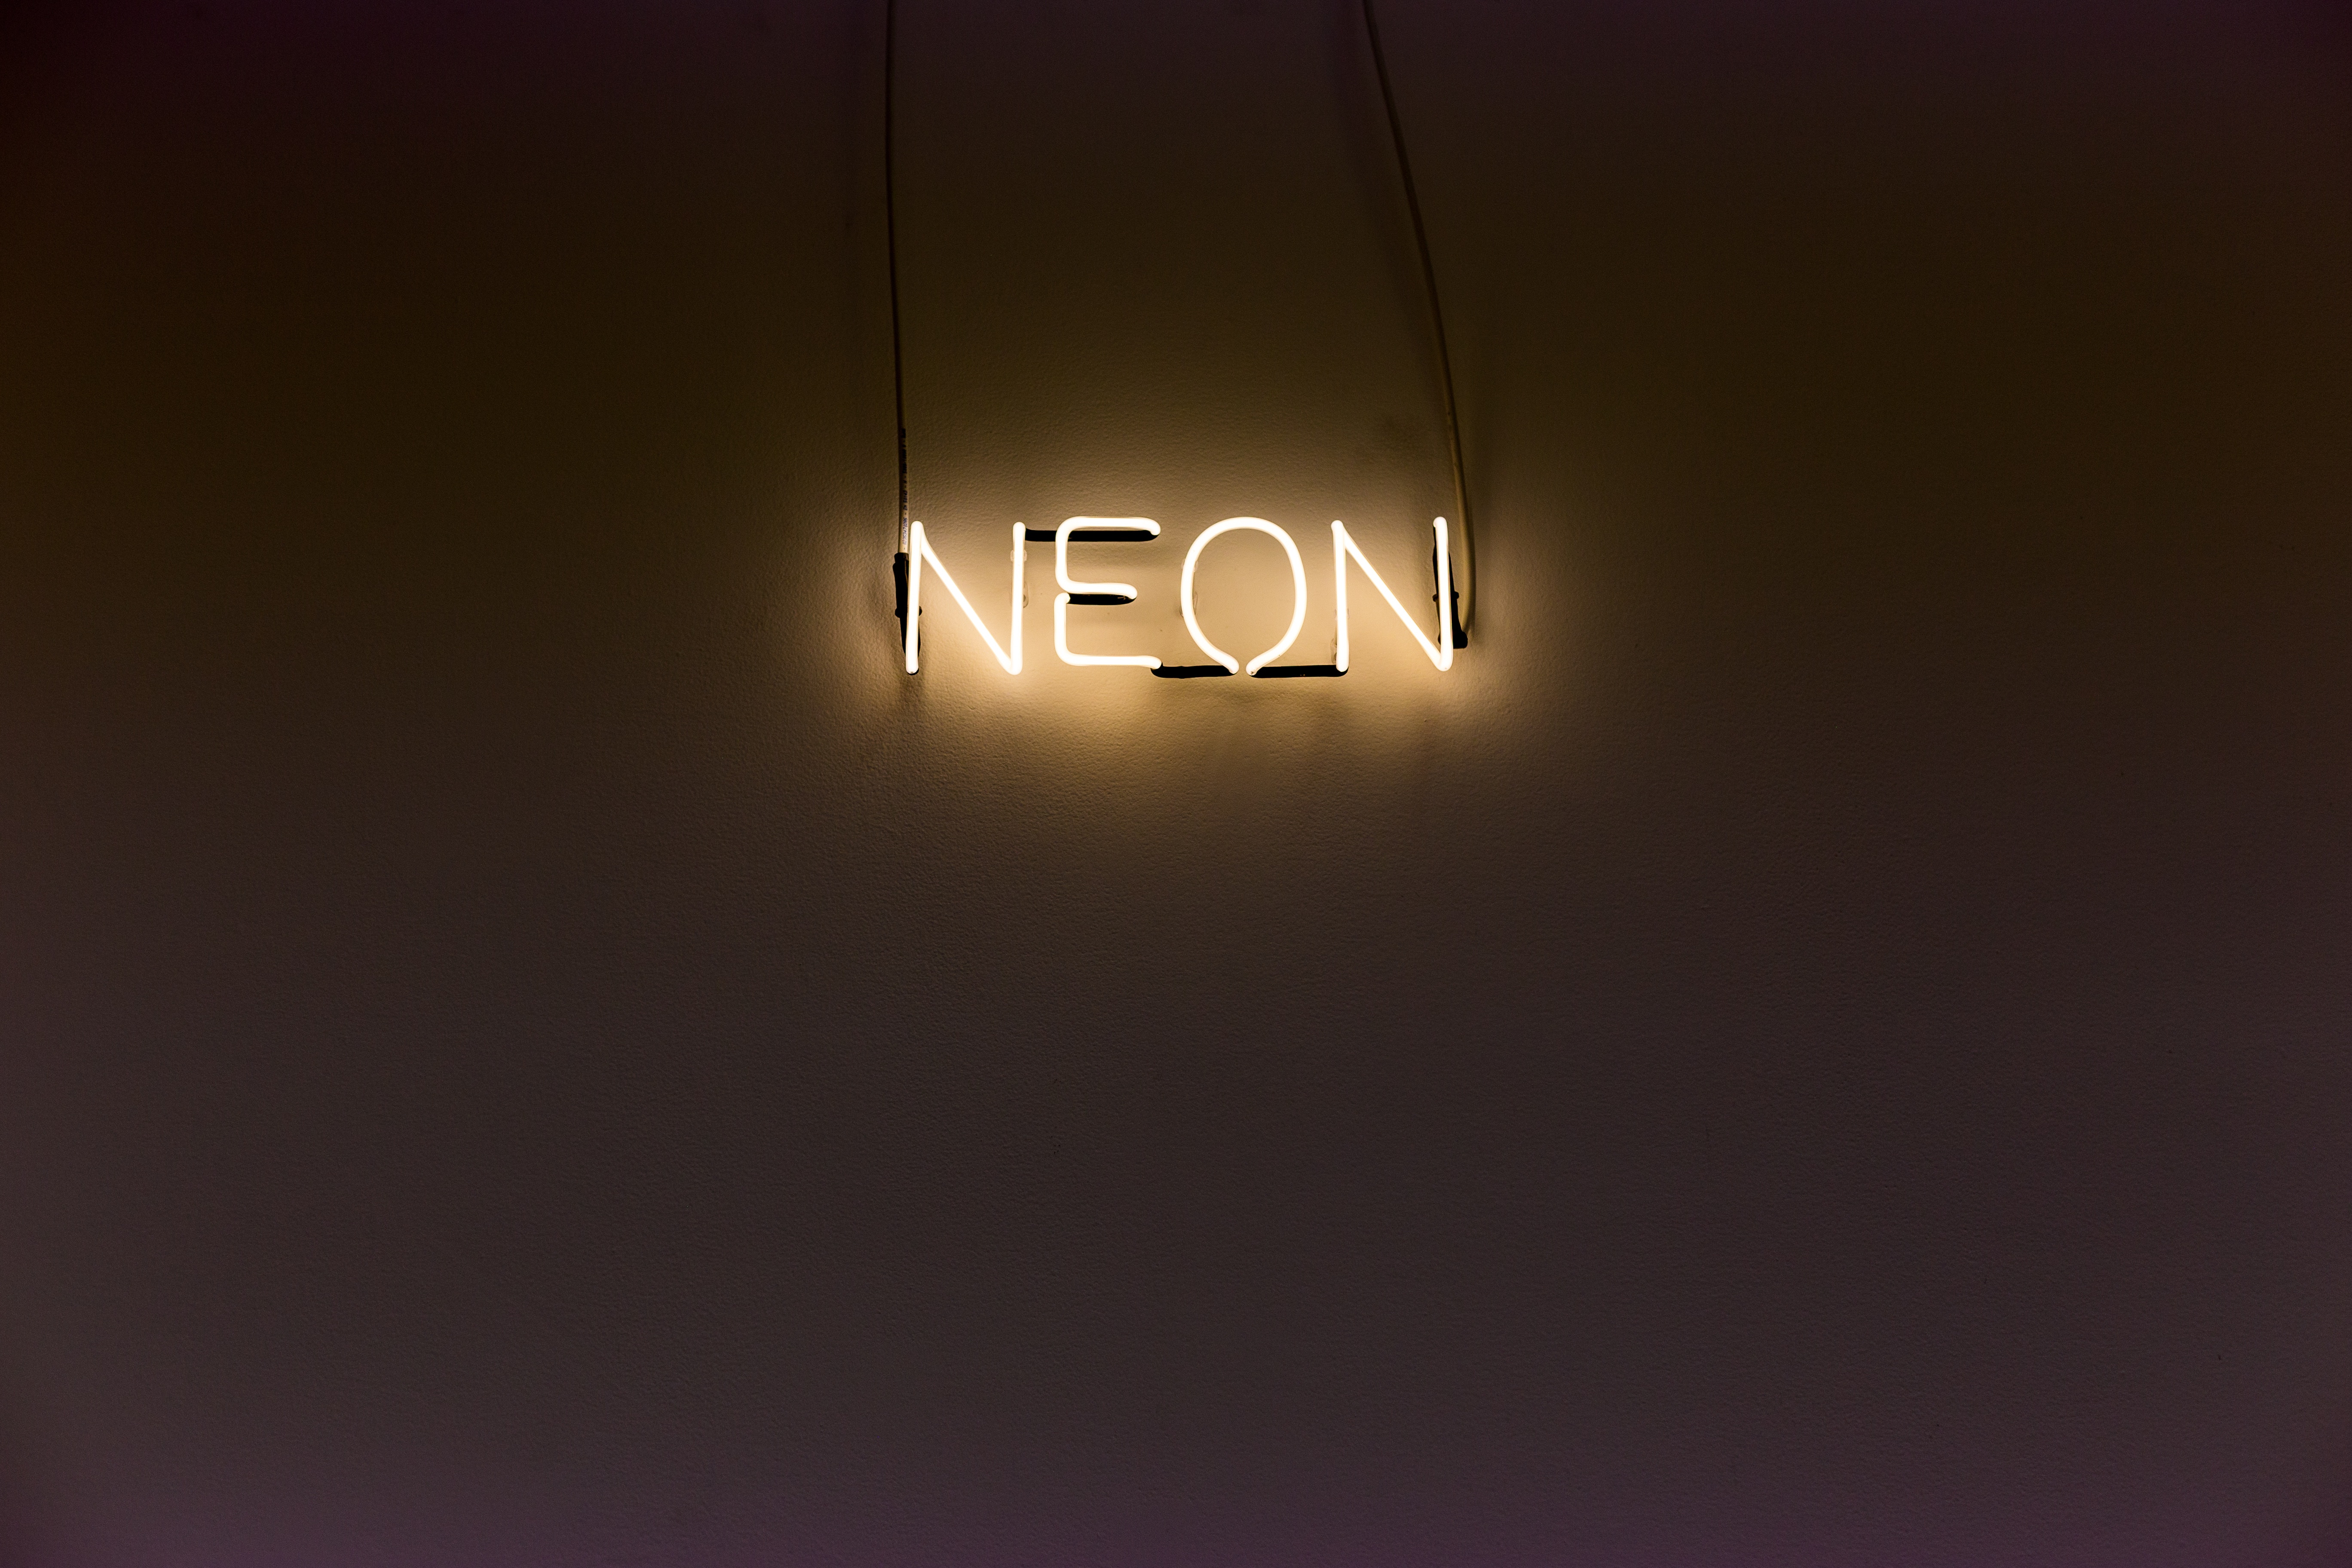 neon, words, wall, backlight, illumination, inscription Full HD